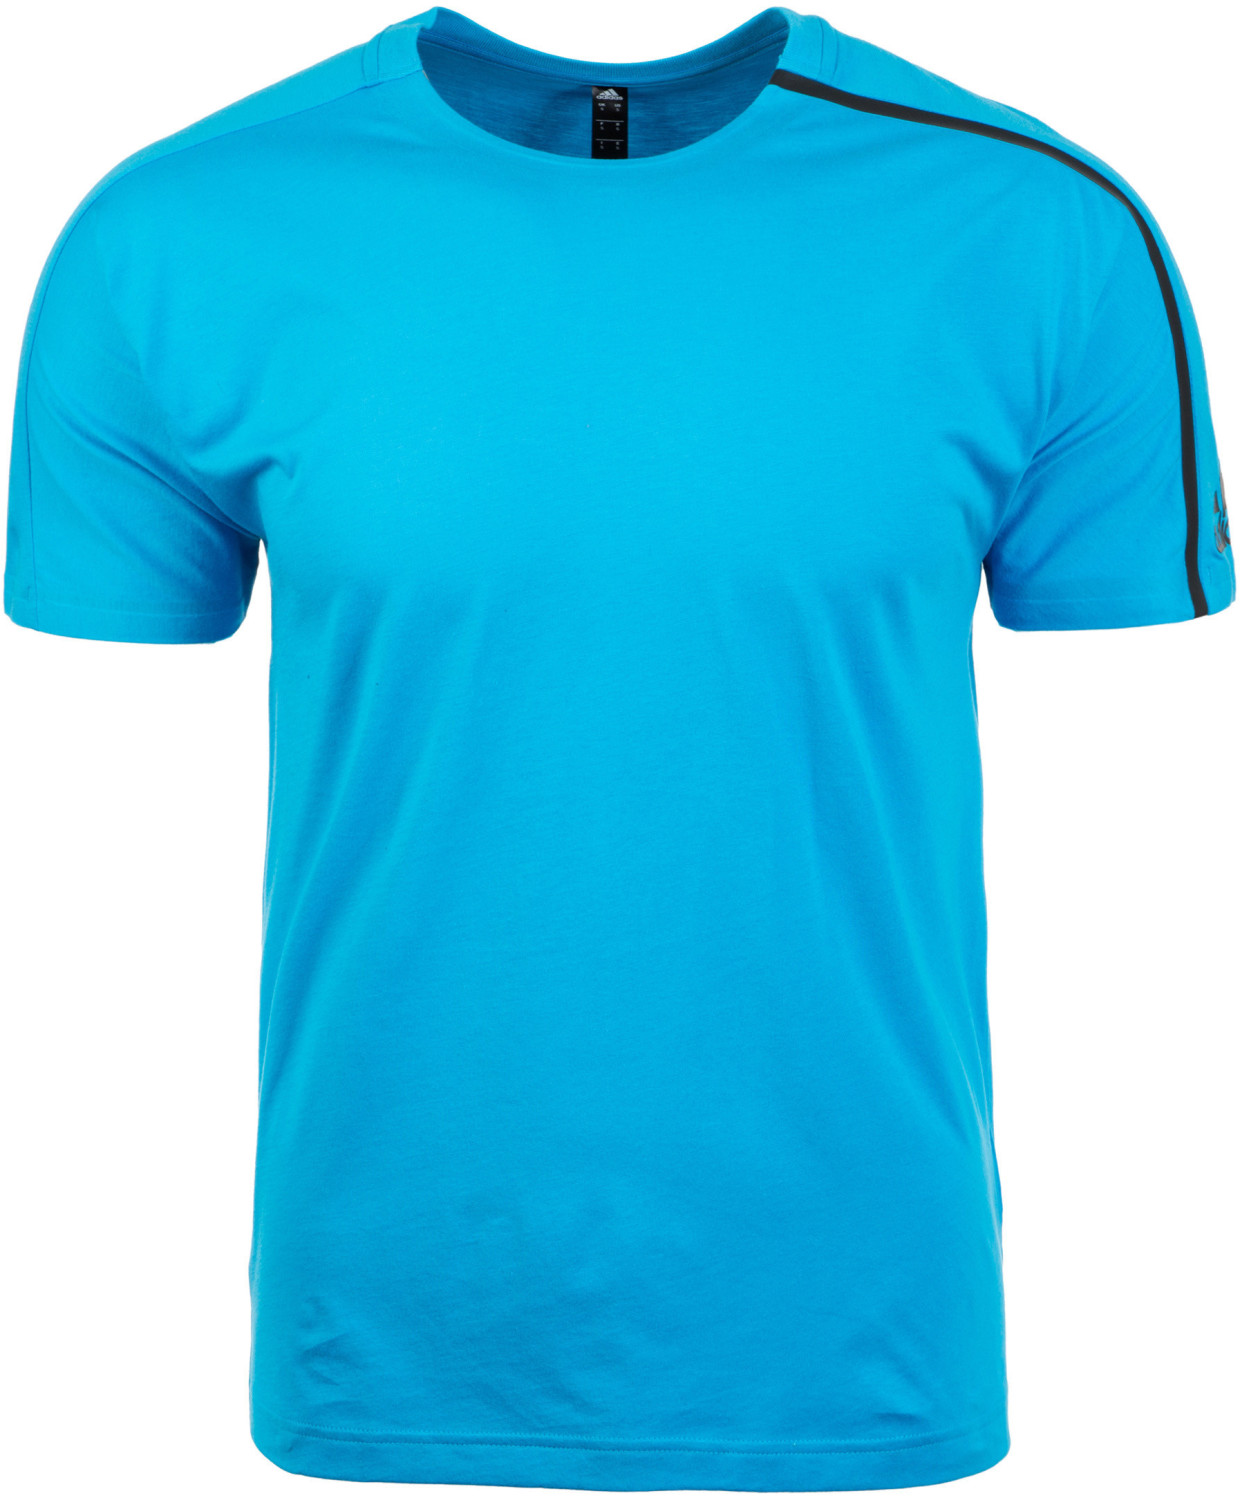 Adidas Z.N.E. T-Shirt blue